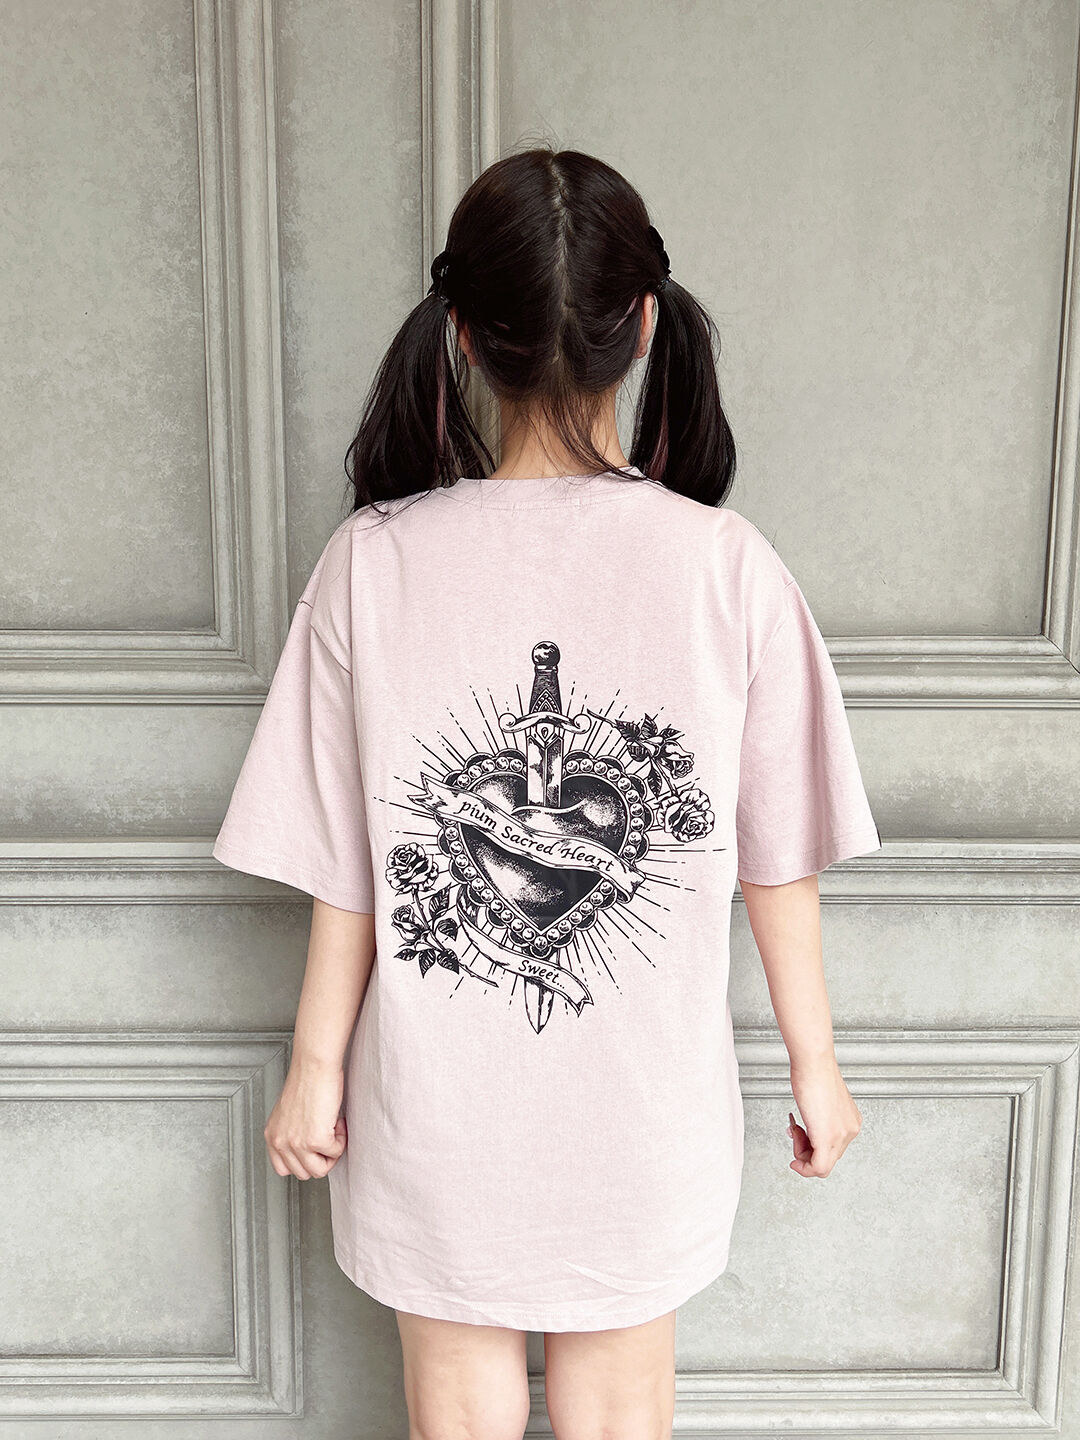 pium sacred heart オーバーサイズTシャツ | pium